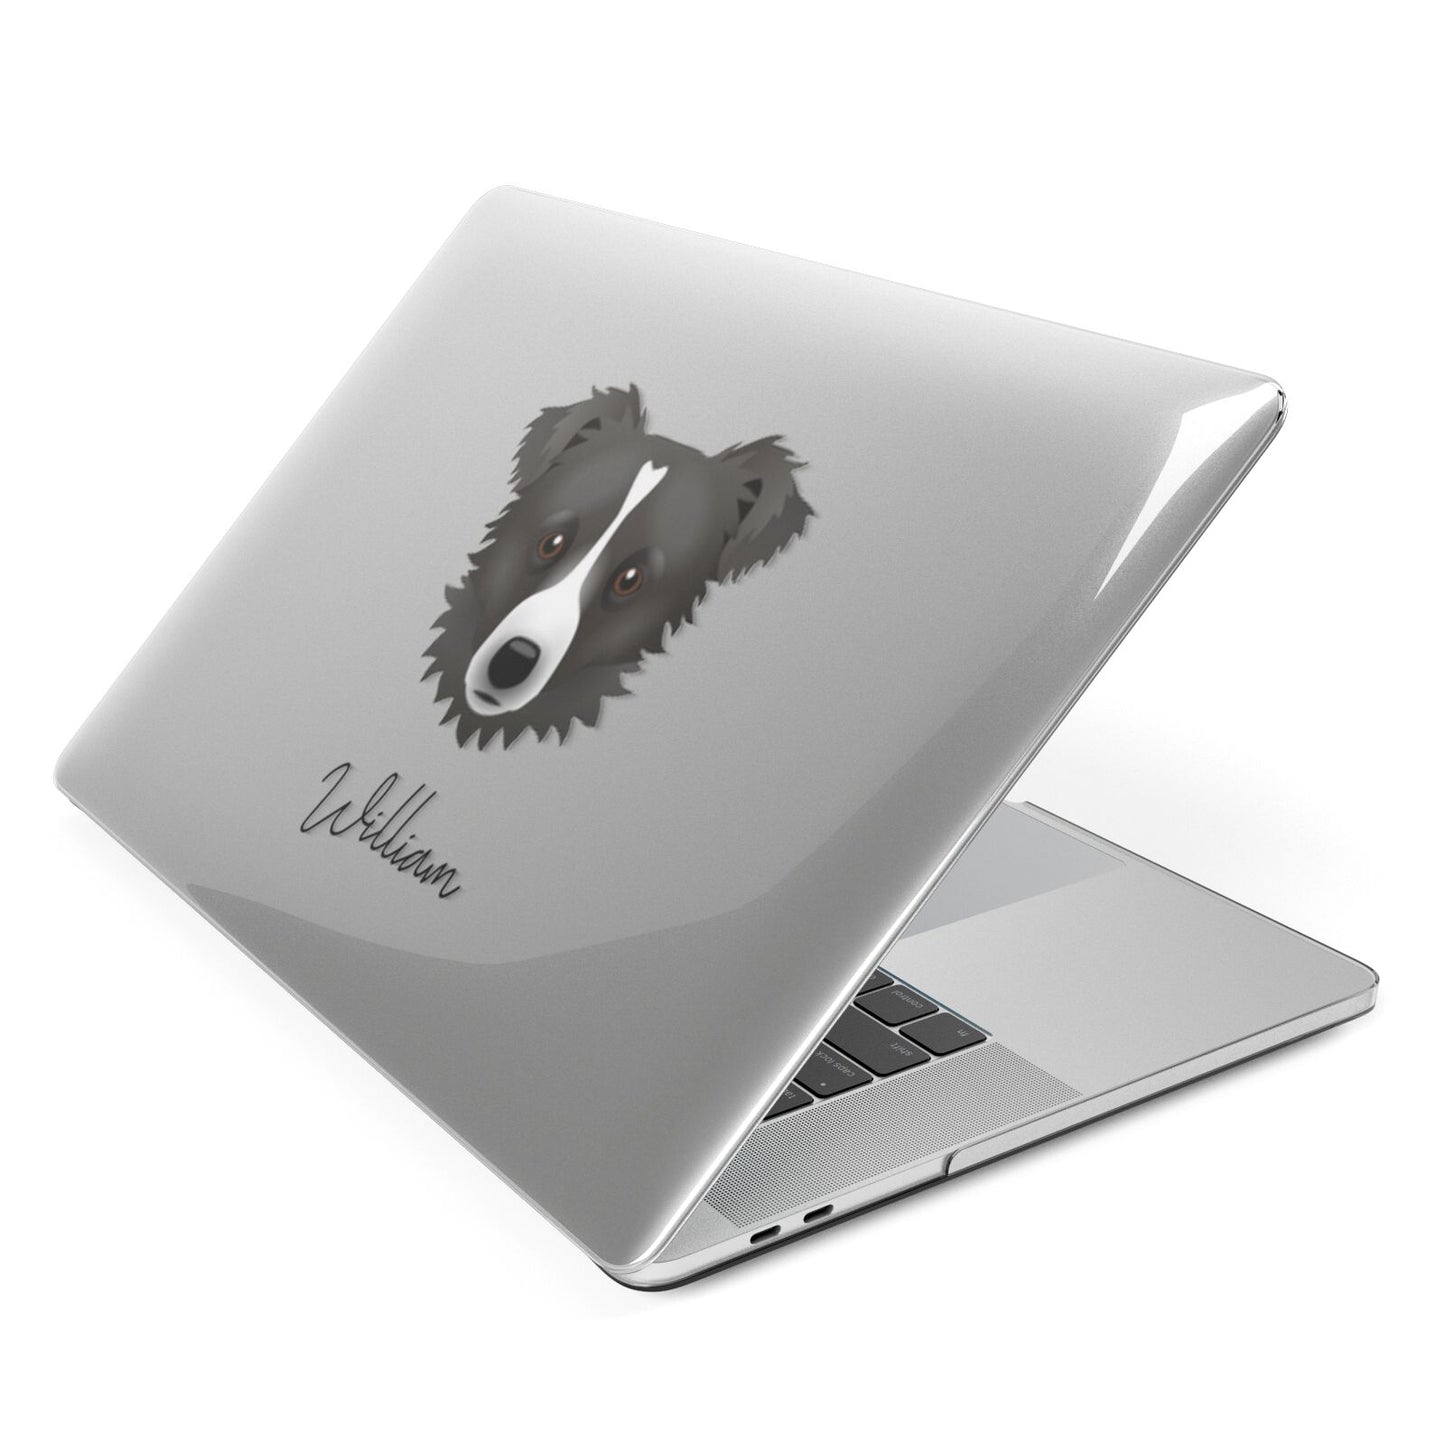 Kokoni Personalised Apple MacBook Case Side View